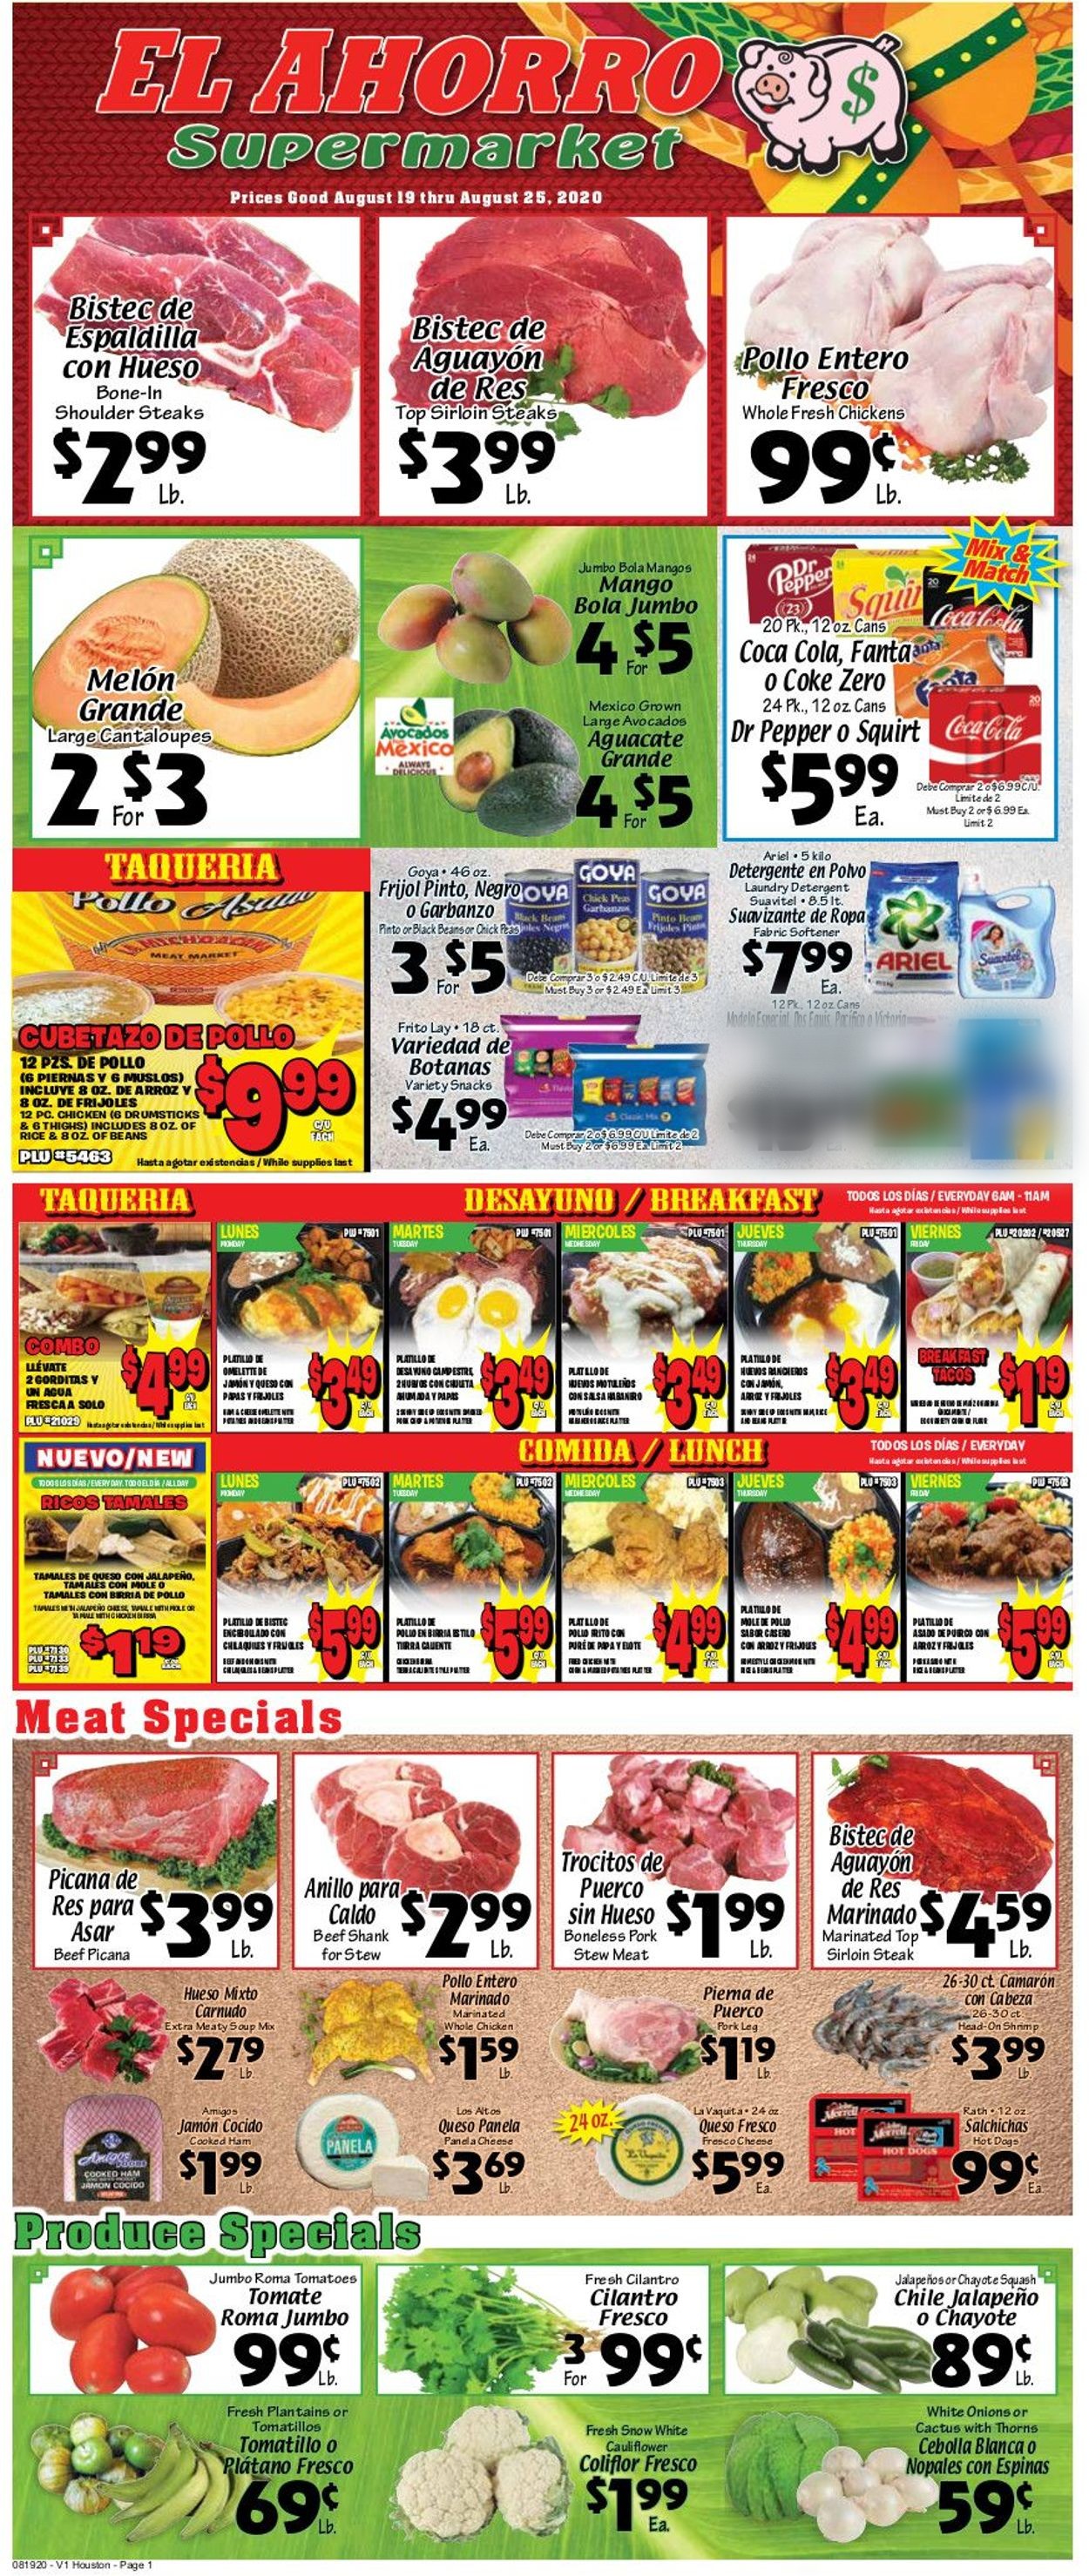 El Ahorro Supermarket Weekly Ad Circular - valid 08/19-08/25/2020